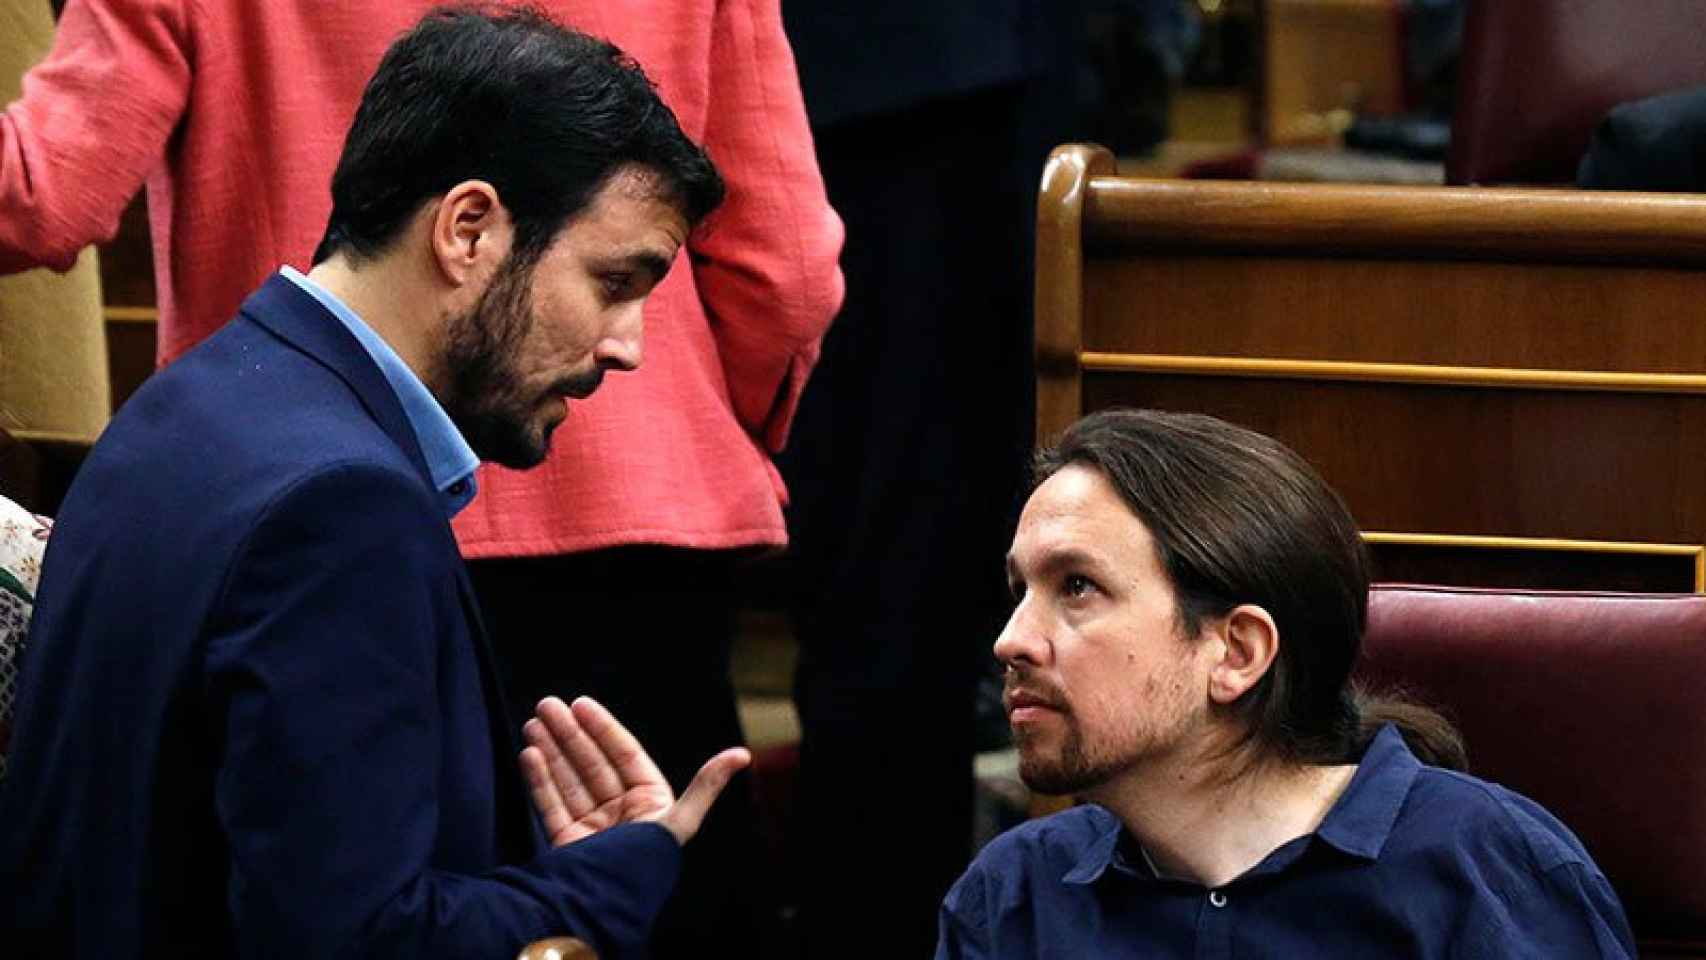 Alberto Garzón y Pablo Iglesias conversan en el Congreso de los Diputados.